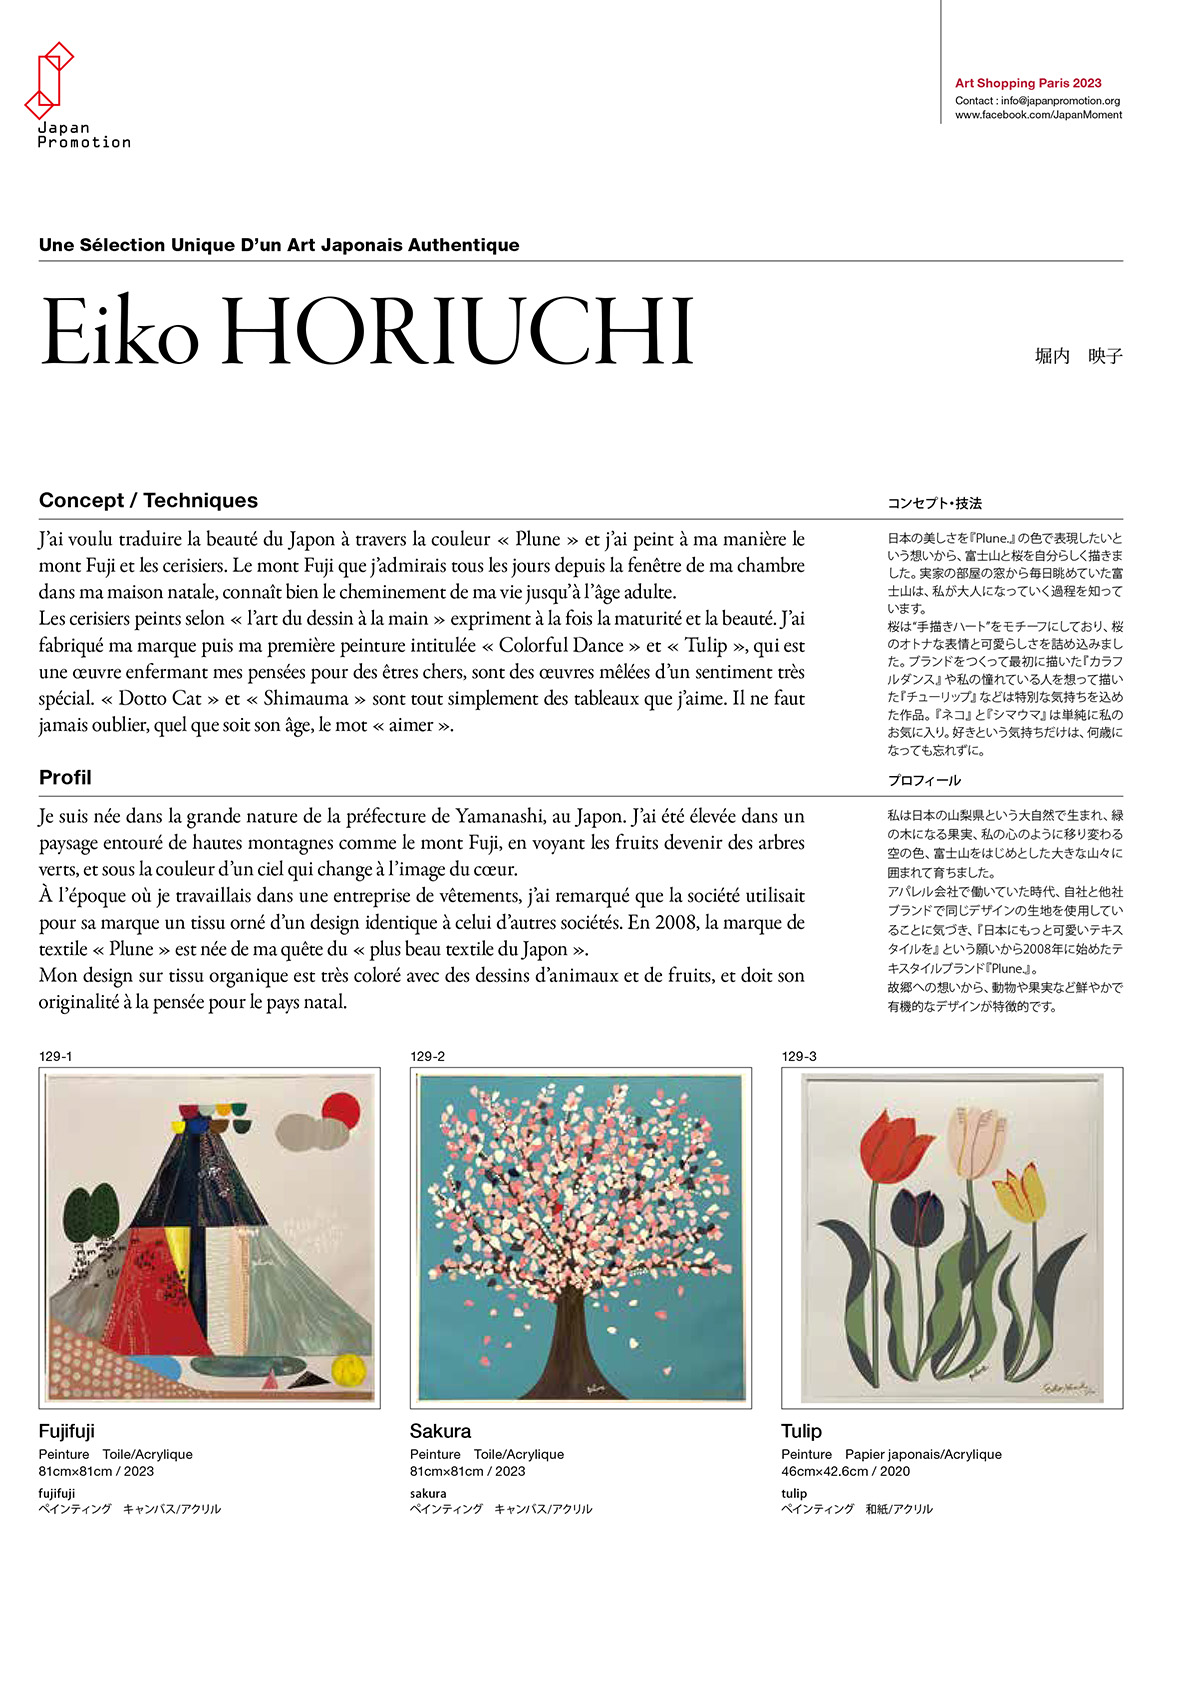 Eiko-HORIUCHI-1